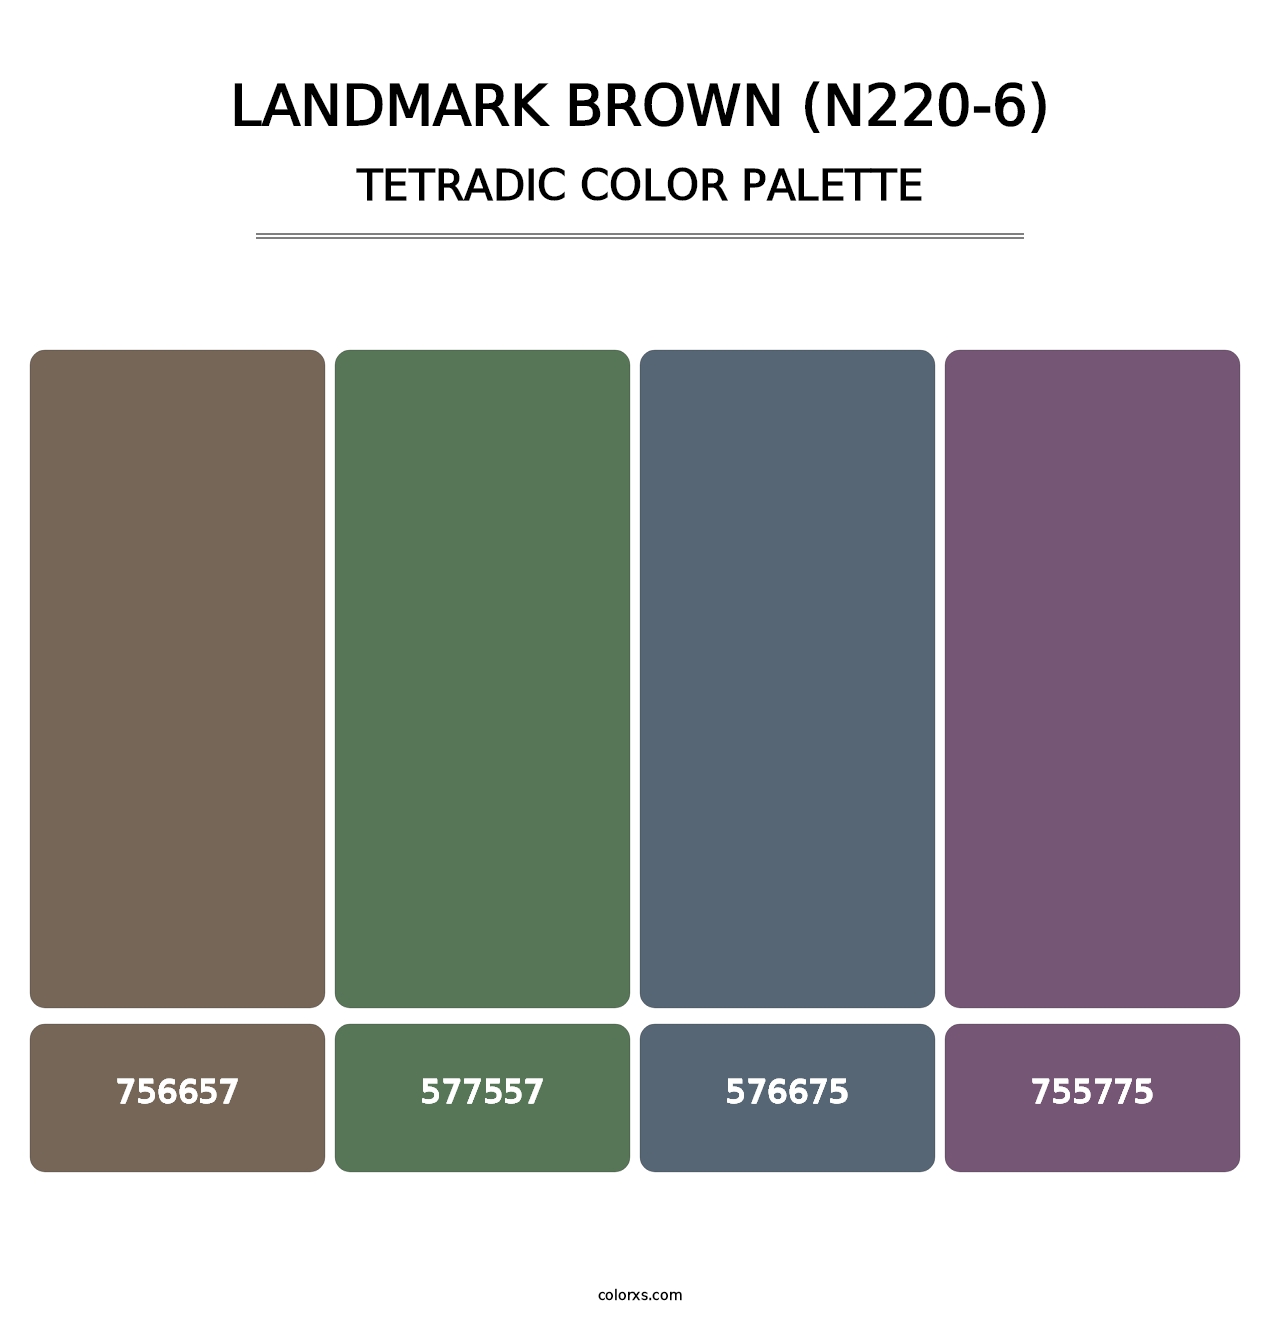 Landmark Brown (N220-6) - Tetradic Color Palette